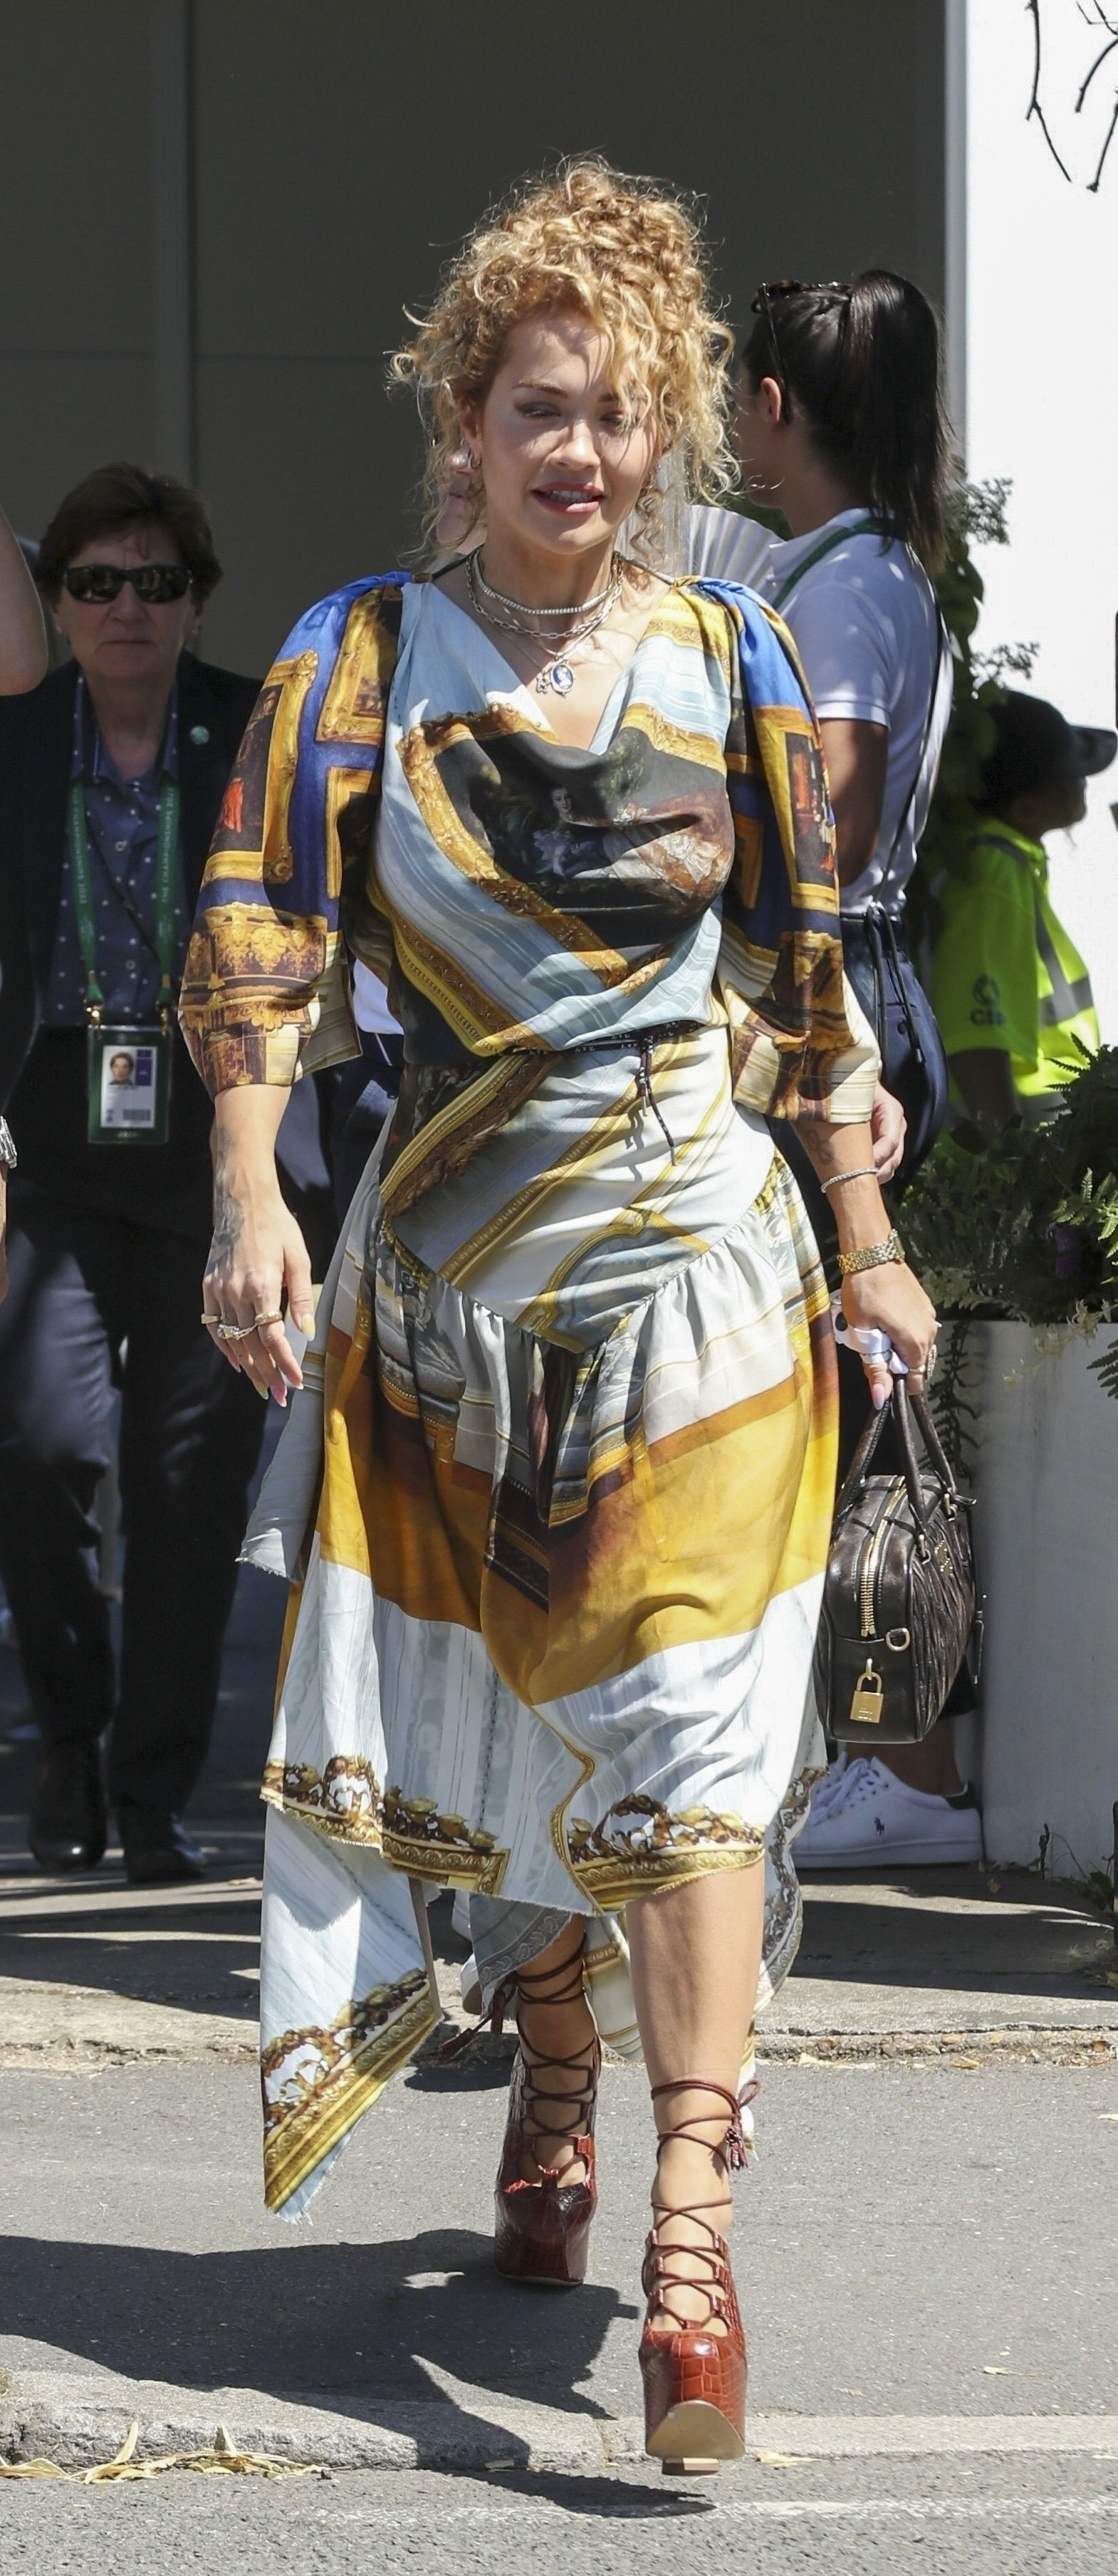 Rita Ora y Taika Waititi fueron fotografiados el domingo pasado cuando llegaban a disfrutar de la final de Wimbledon, en Londres. Él vistió un pantalón azul, camisa blanca y gorra, y ella un vestido estampado multicolor (Fotos: The Grosby Group)